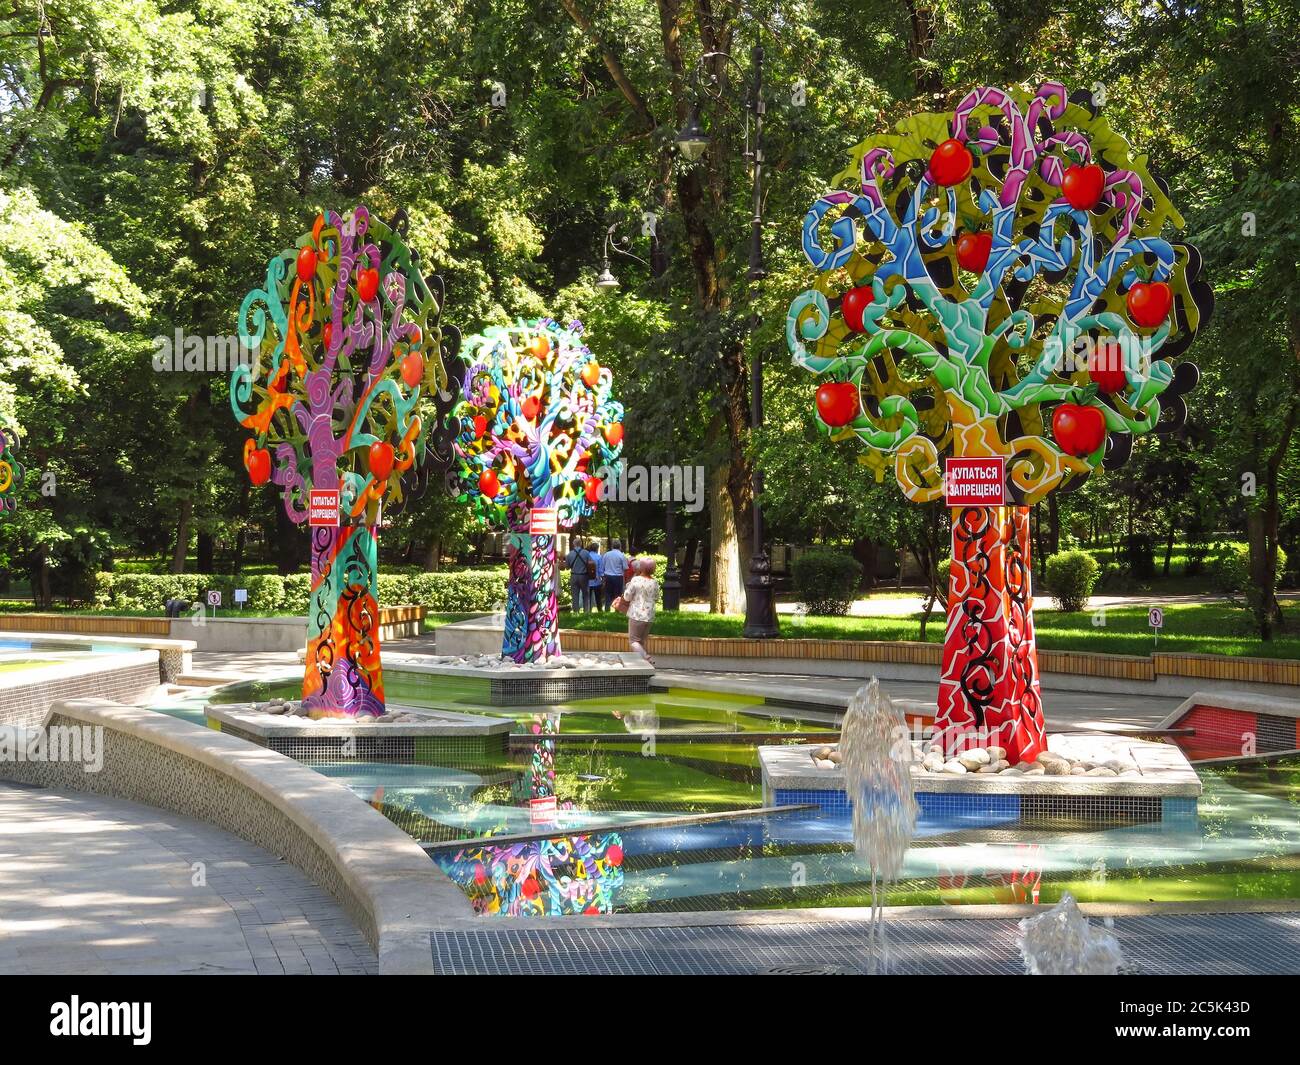 Almaty, Kasachstan - 11. August 2019: Apfelbäume-Ikone im öffentlichen Park Stockfoto